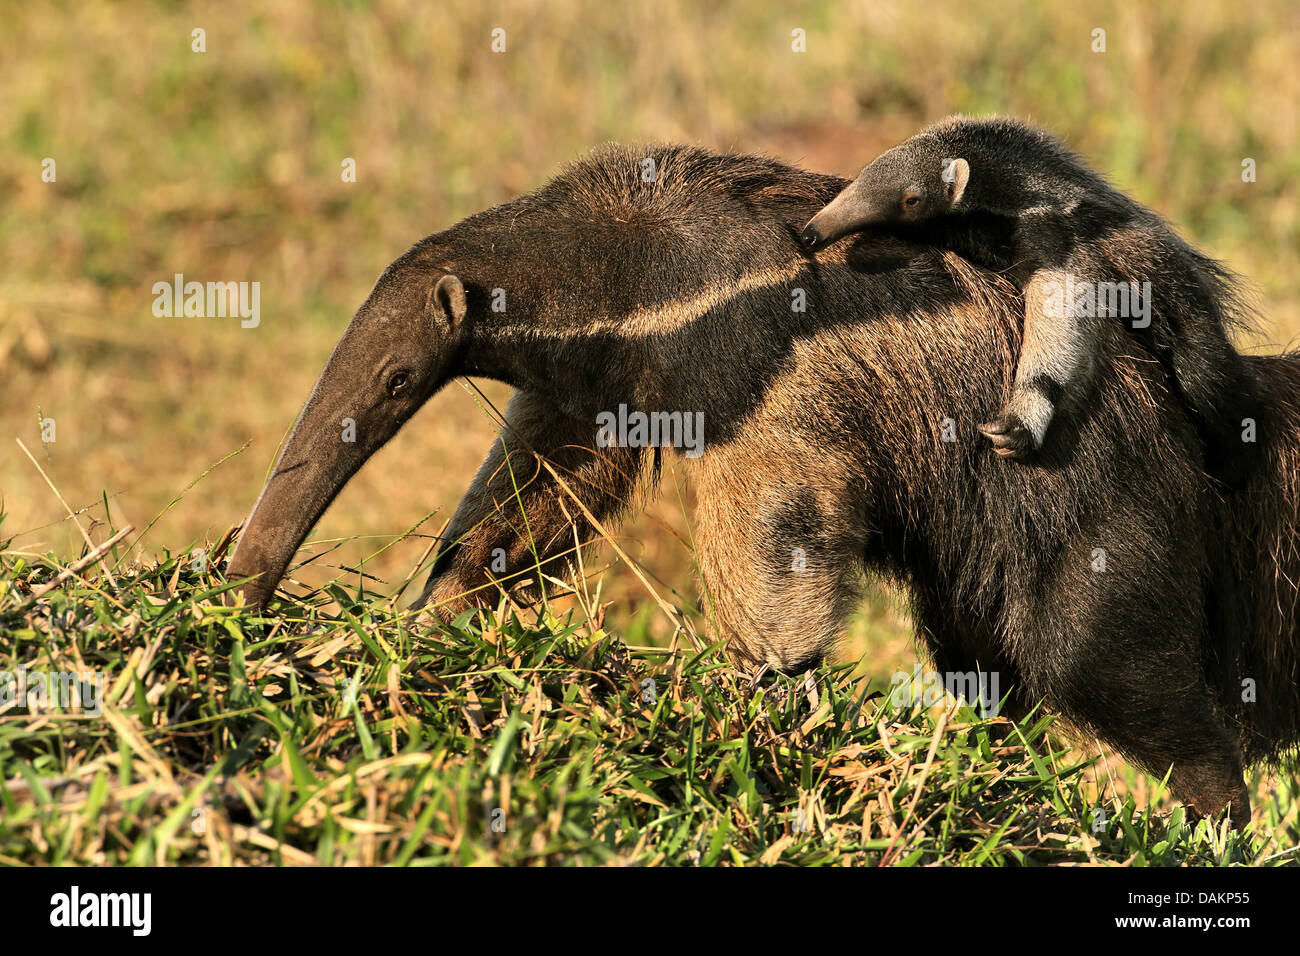 Großer Ameisenbär (Myrmecophaga Tridactyla), weiblichen Ameisenbär trägt ihr Kind auf den Rücken, Brasilien, Mato Grosso do Sul Stockfoto